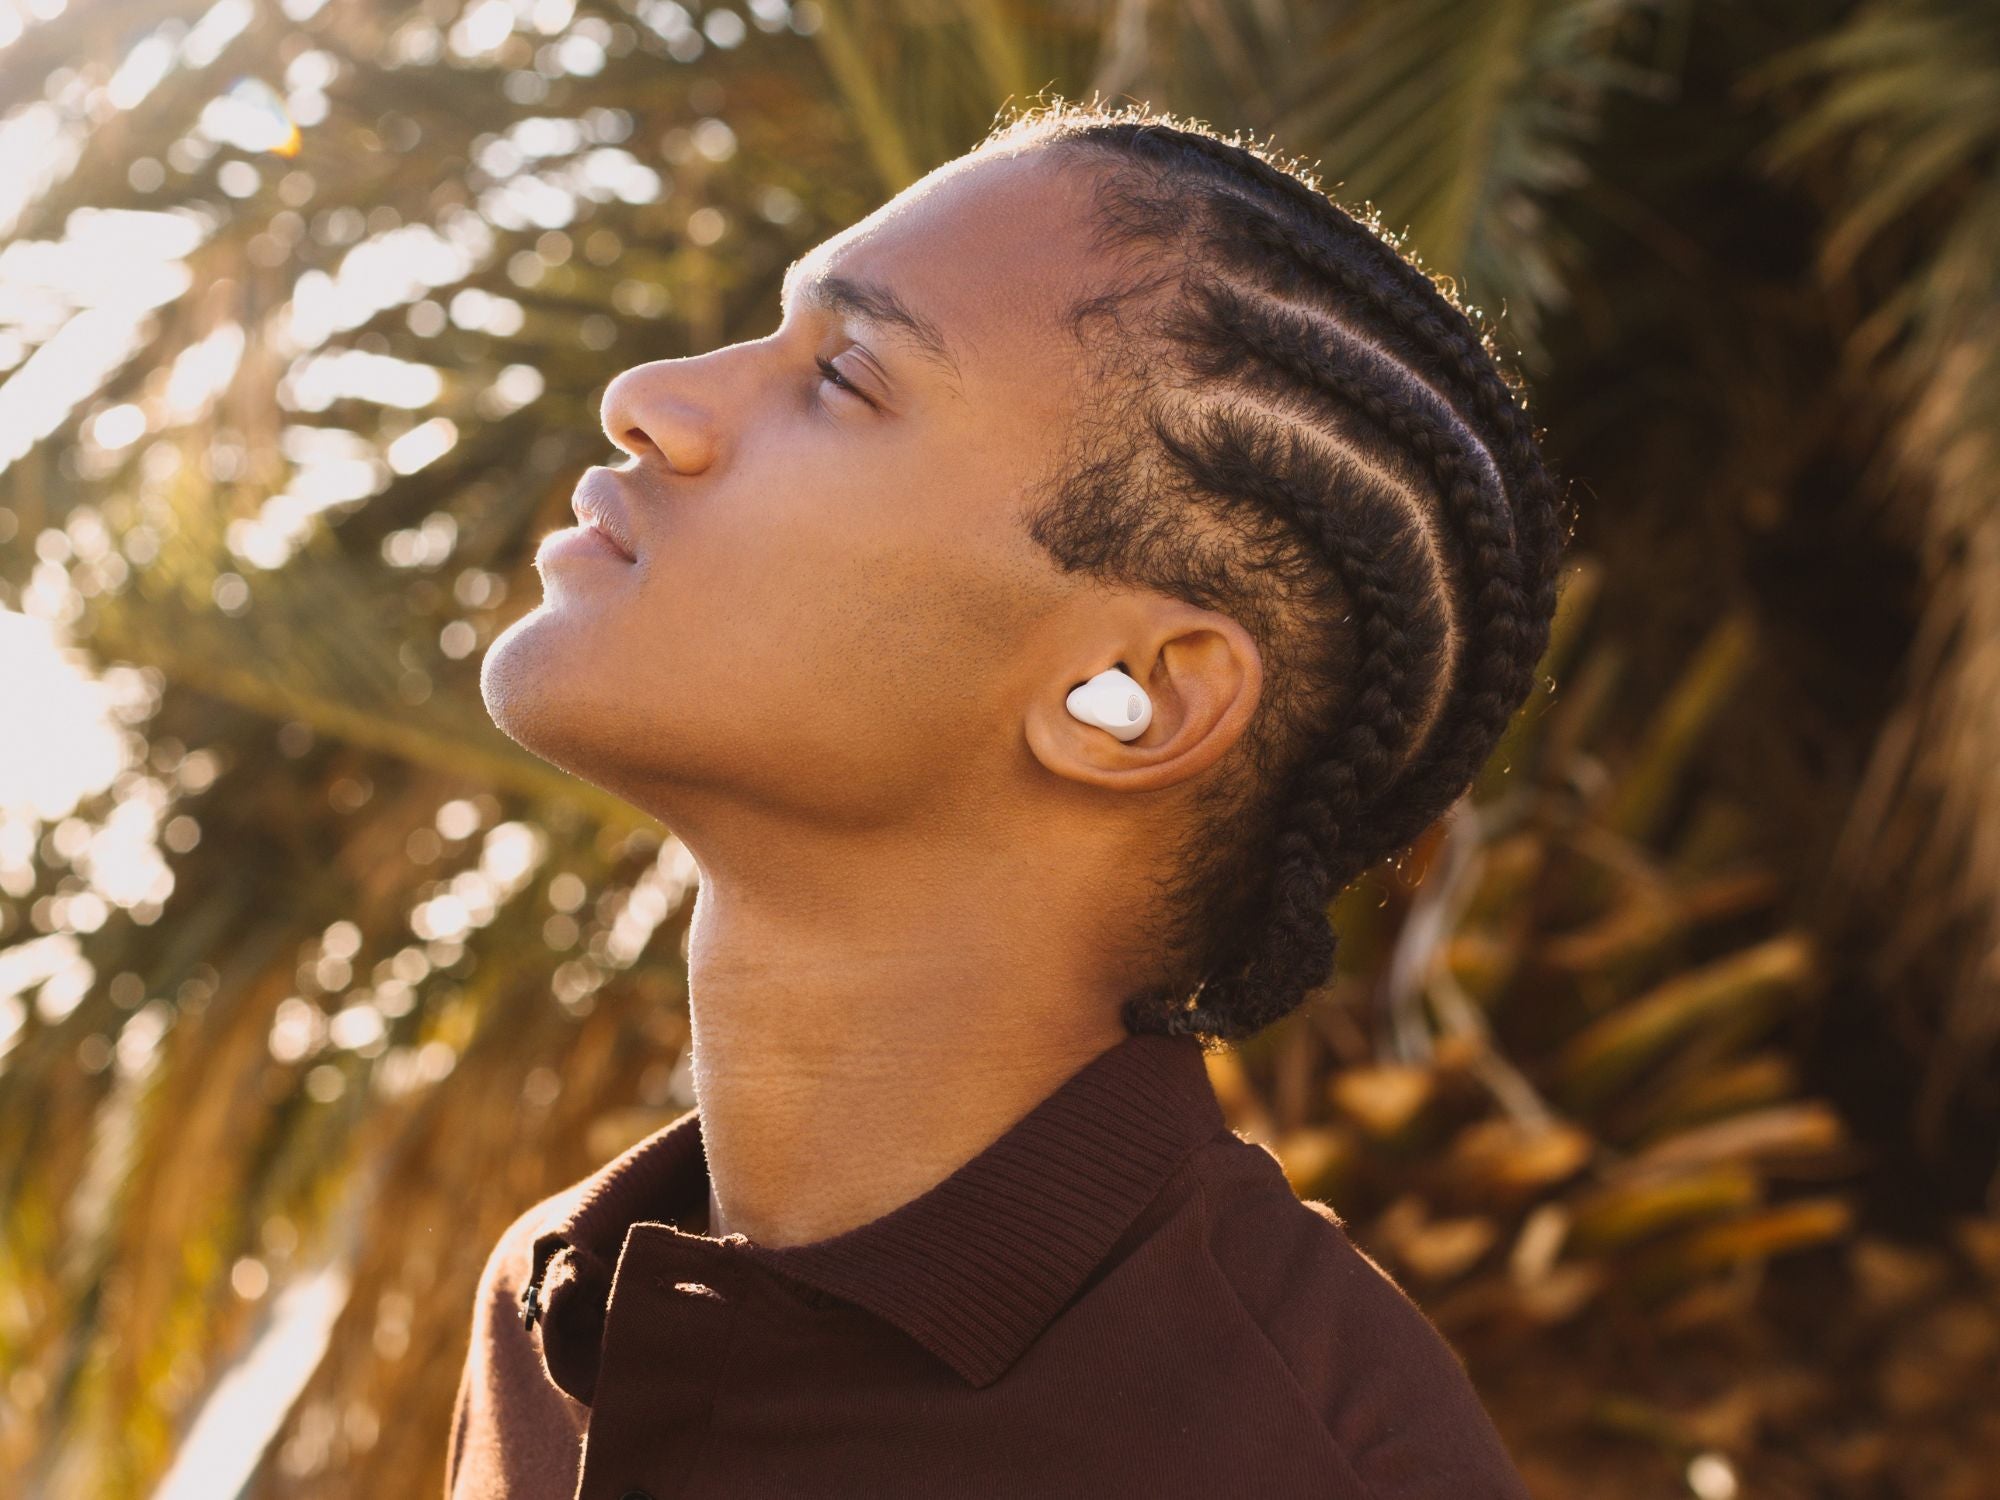 #Diese LG In-Ear-Kopfhörer reinigen sich selbst: Gerade sparst du 30 Euro